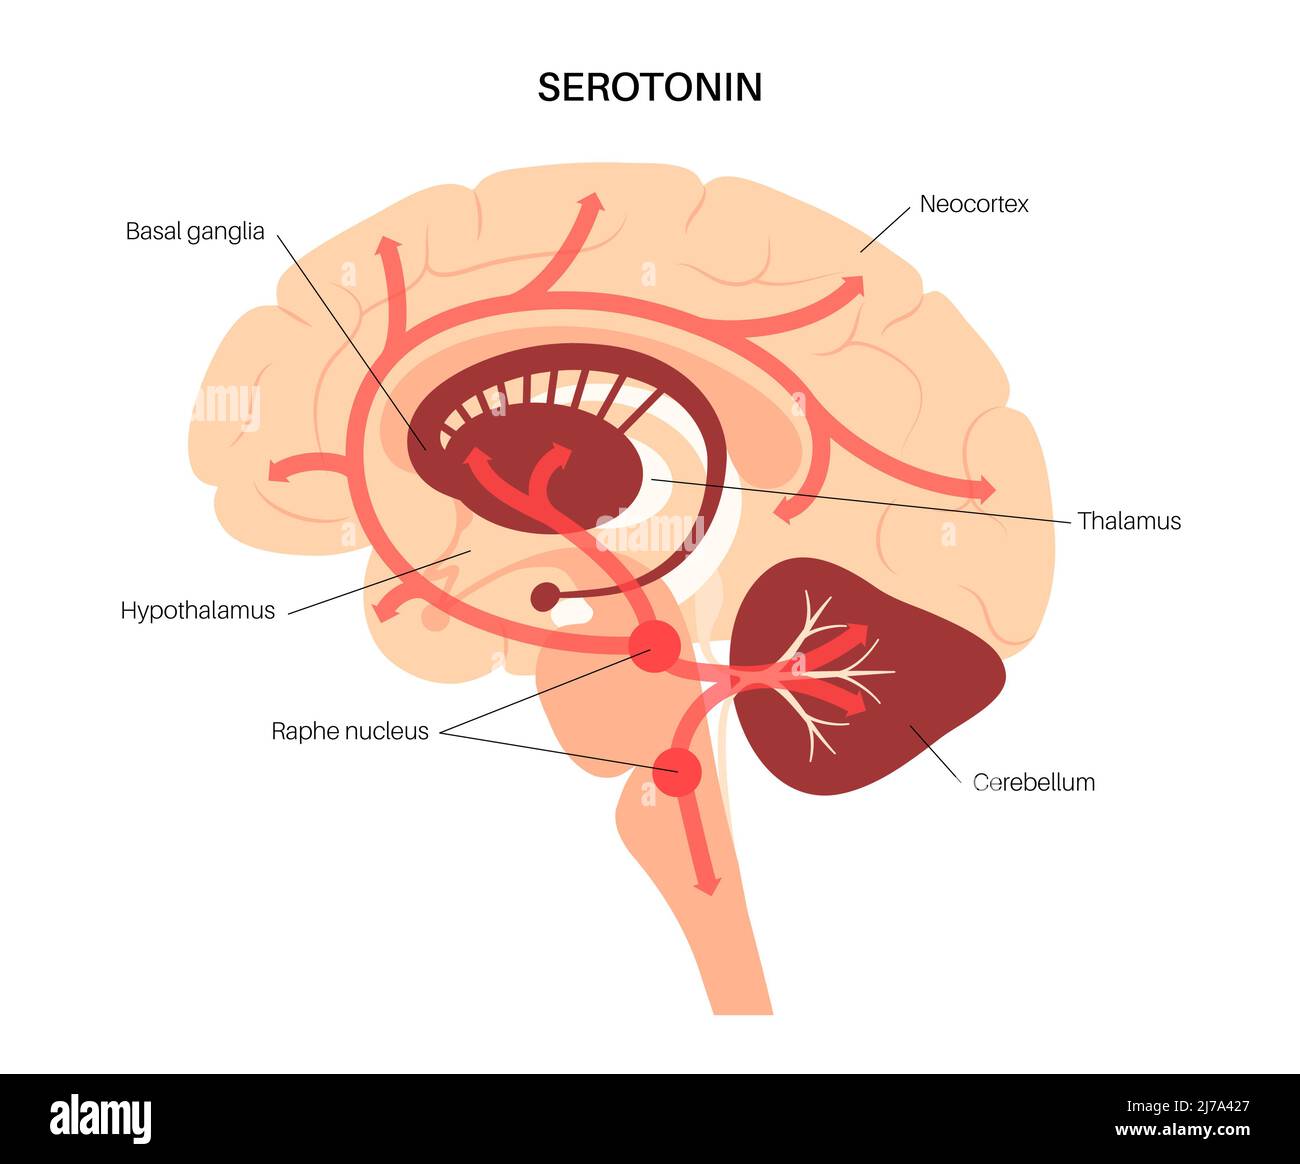 Serotonin pathway in brain, illustration Stock Photo